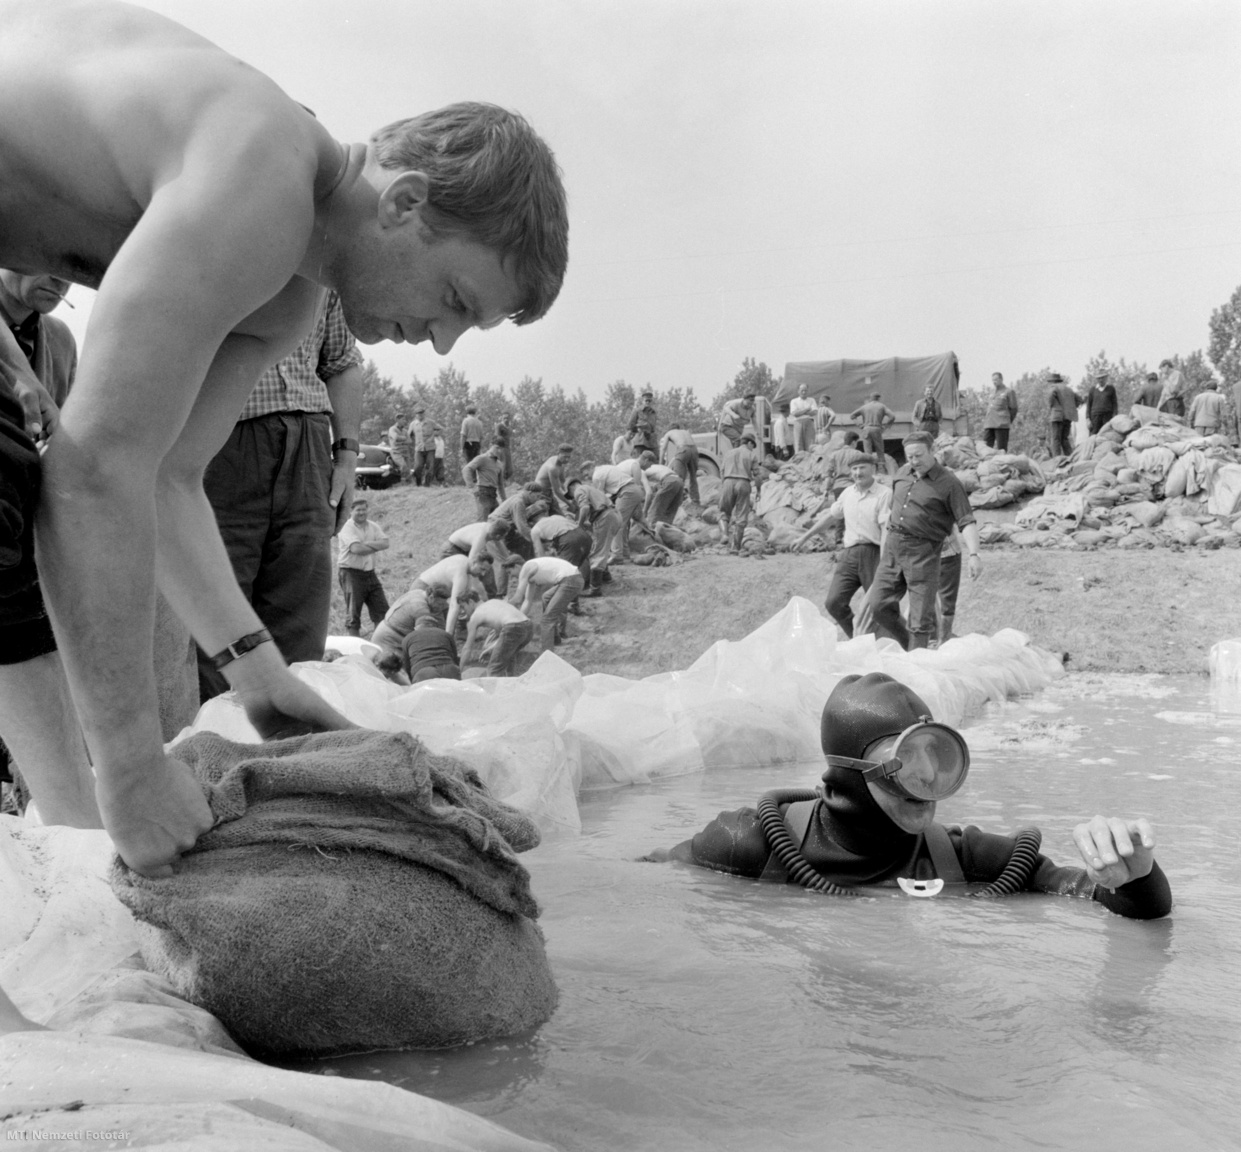 Makó, 1970. május 21. Homokzsákot visz könnyűbúvár a mélybe egy buzgár szivárgásának megszüntetésére Makónál, ahol a Maros árhulláma ellen védekeznek